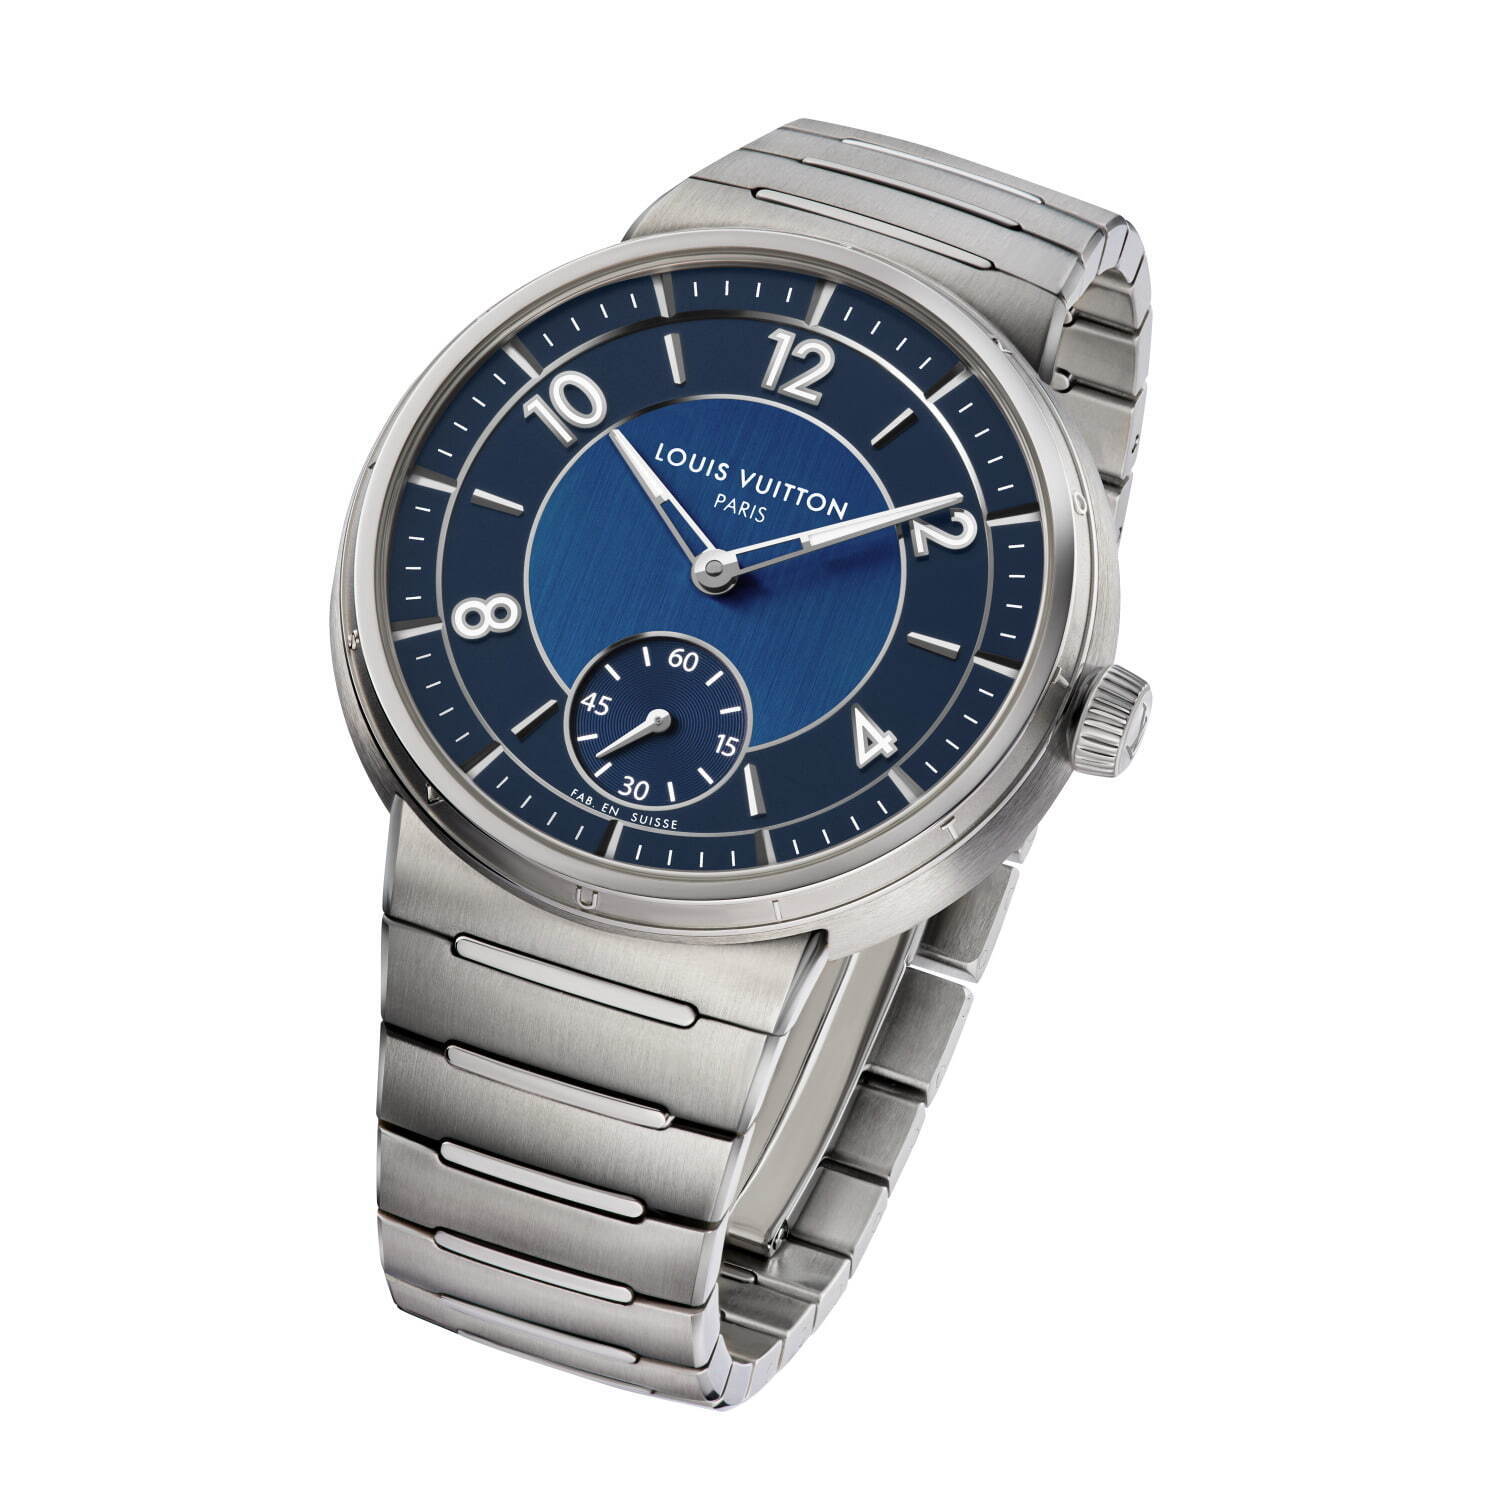 ルイ・ヴィトン「タンブール」新作腕時計、ケース一体型の薄型